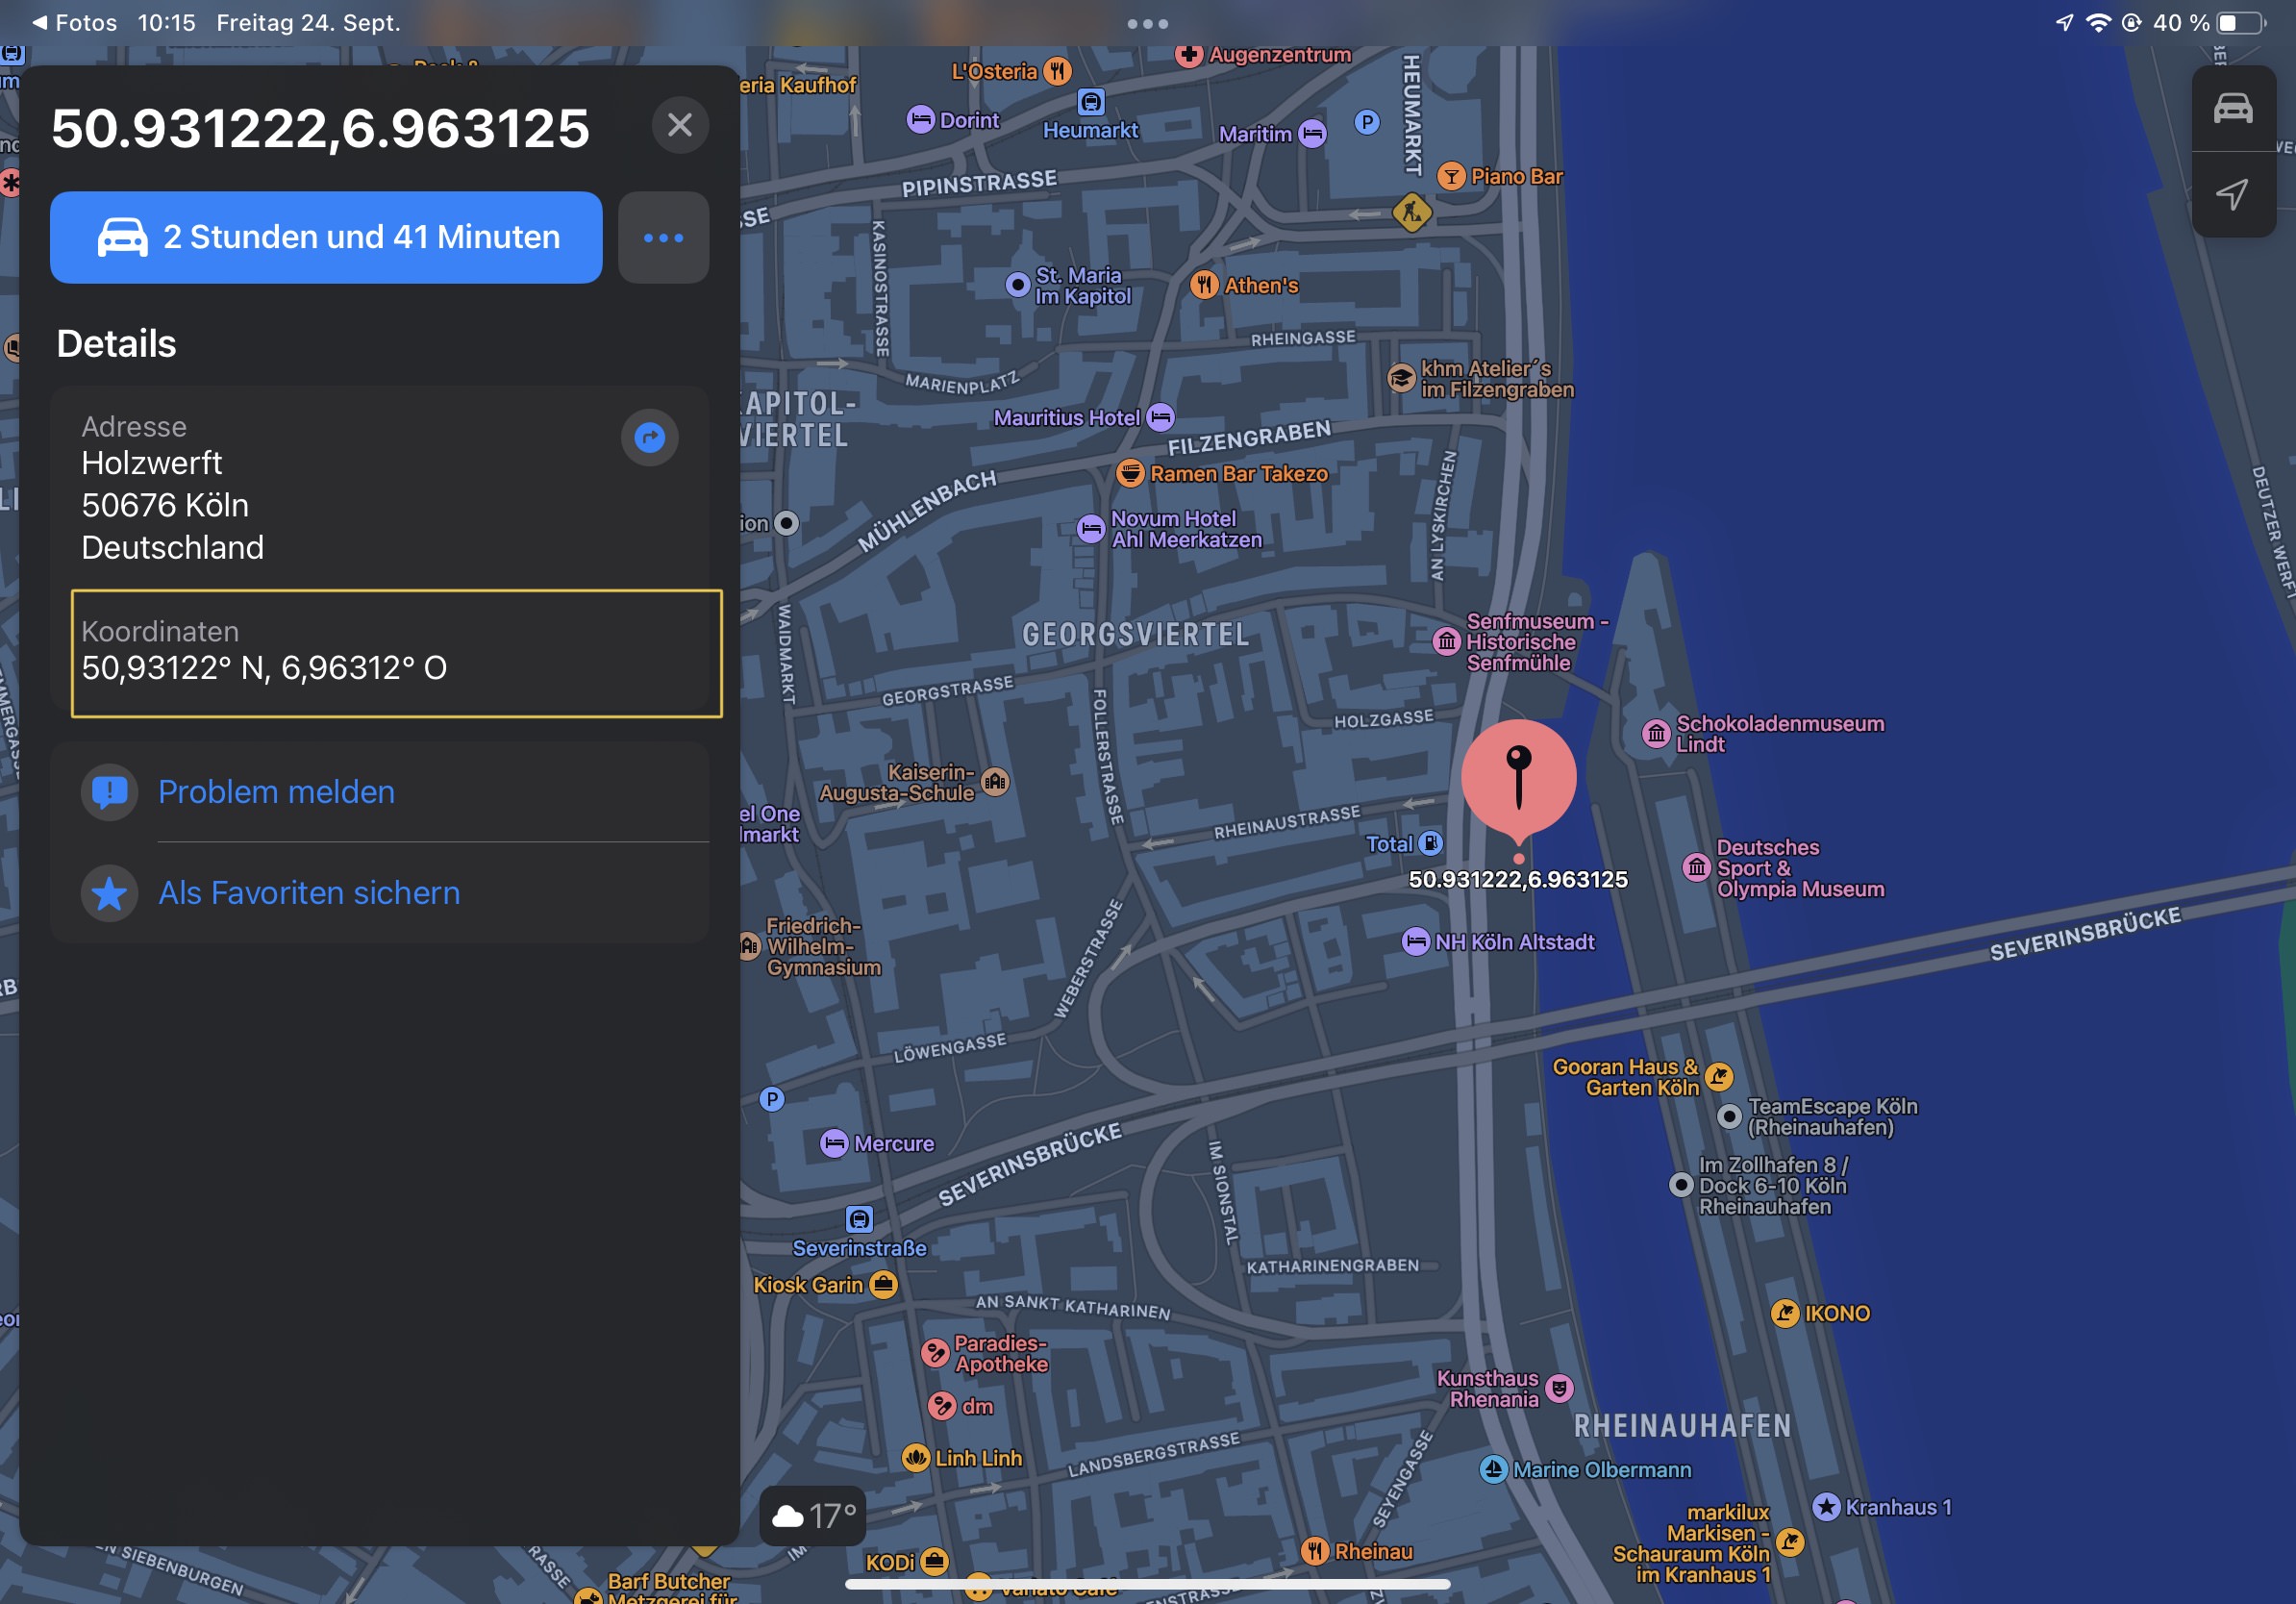 Mit einem Fingertipp auf die blaue Schaltfläche lässt sich die Navigation über Apples Karten-App starten. Die GPS-Koordinaten lassen sich mit einem Tipp und anschließendem »Kopieren« in die Zwischenablage bringen und in anderen Apps weiterverwenden.